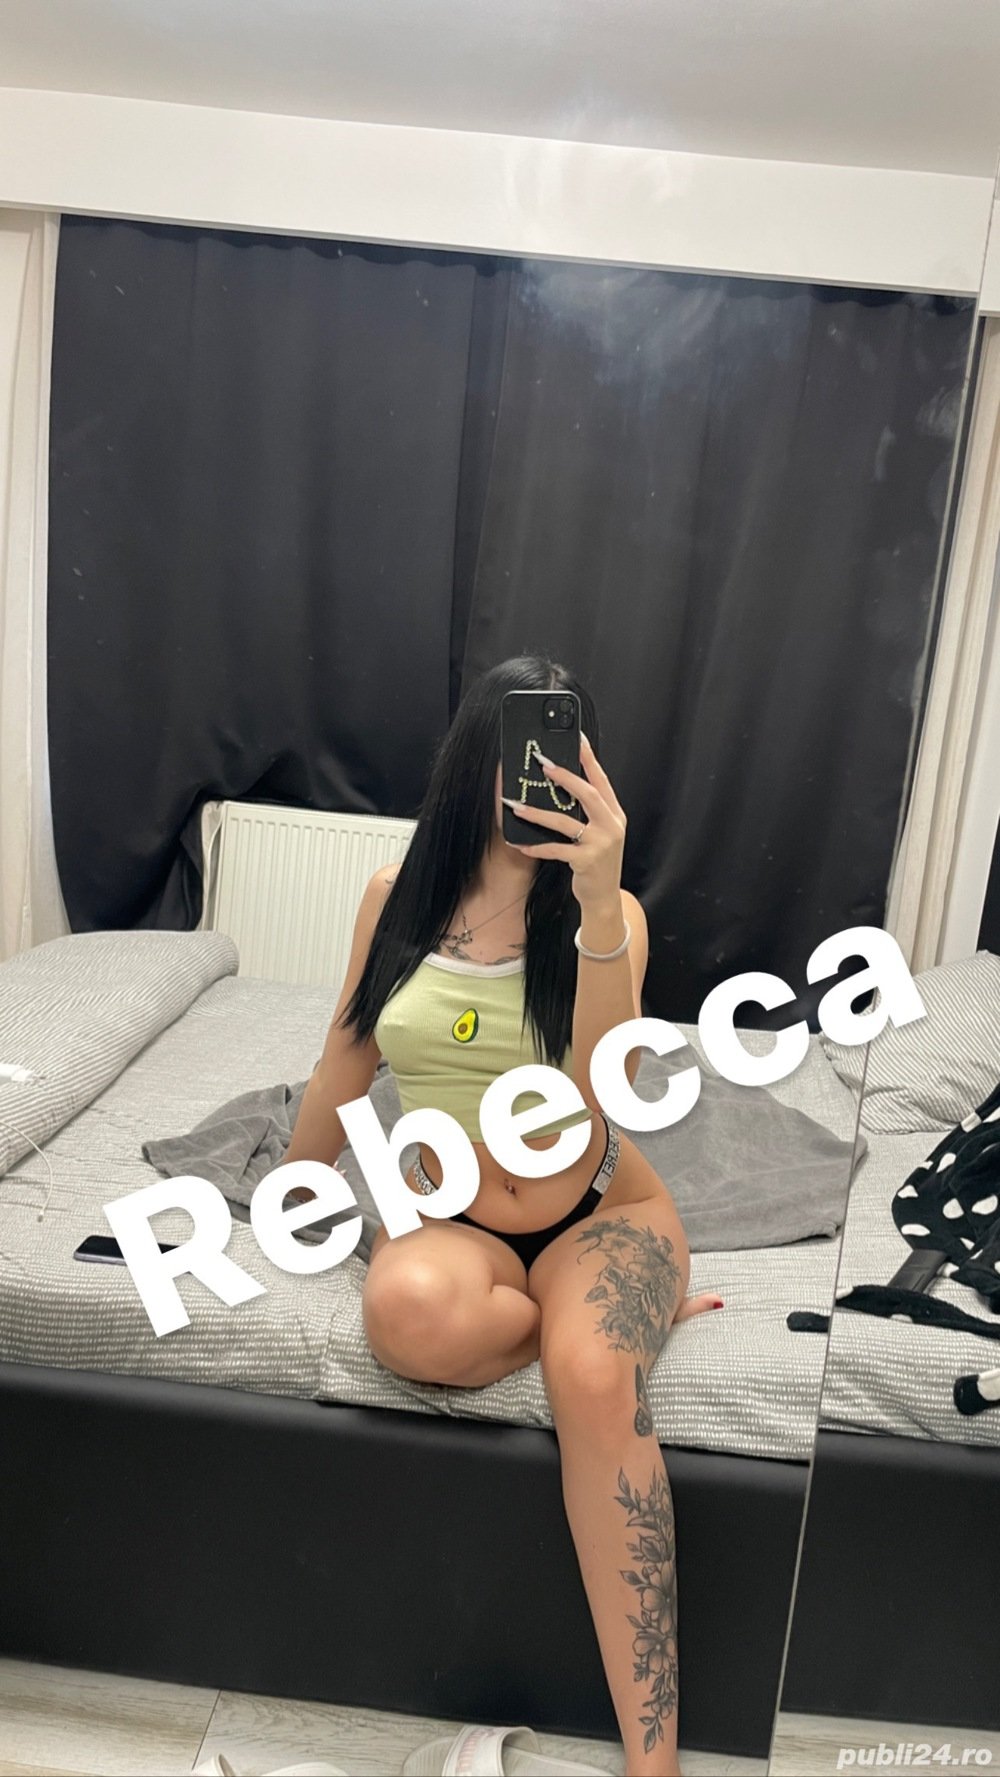 Rebecca /poze reale /am revenit  - imagine 2